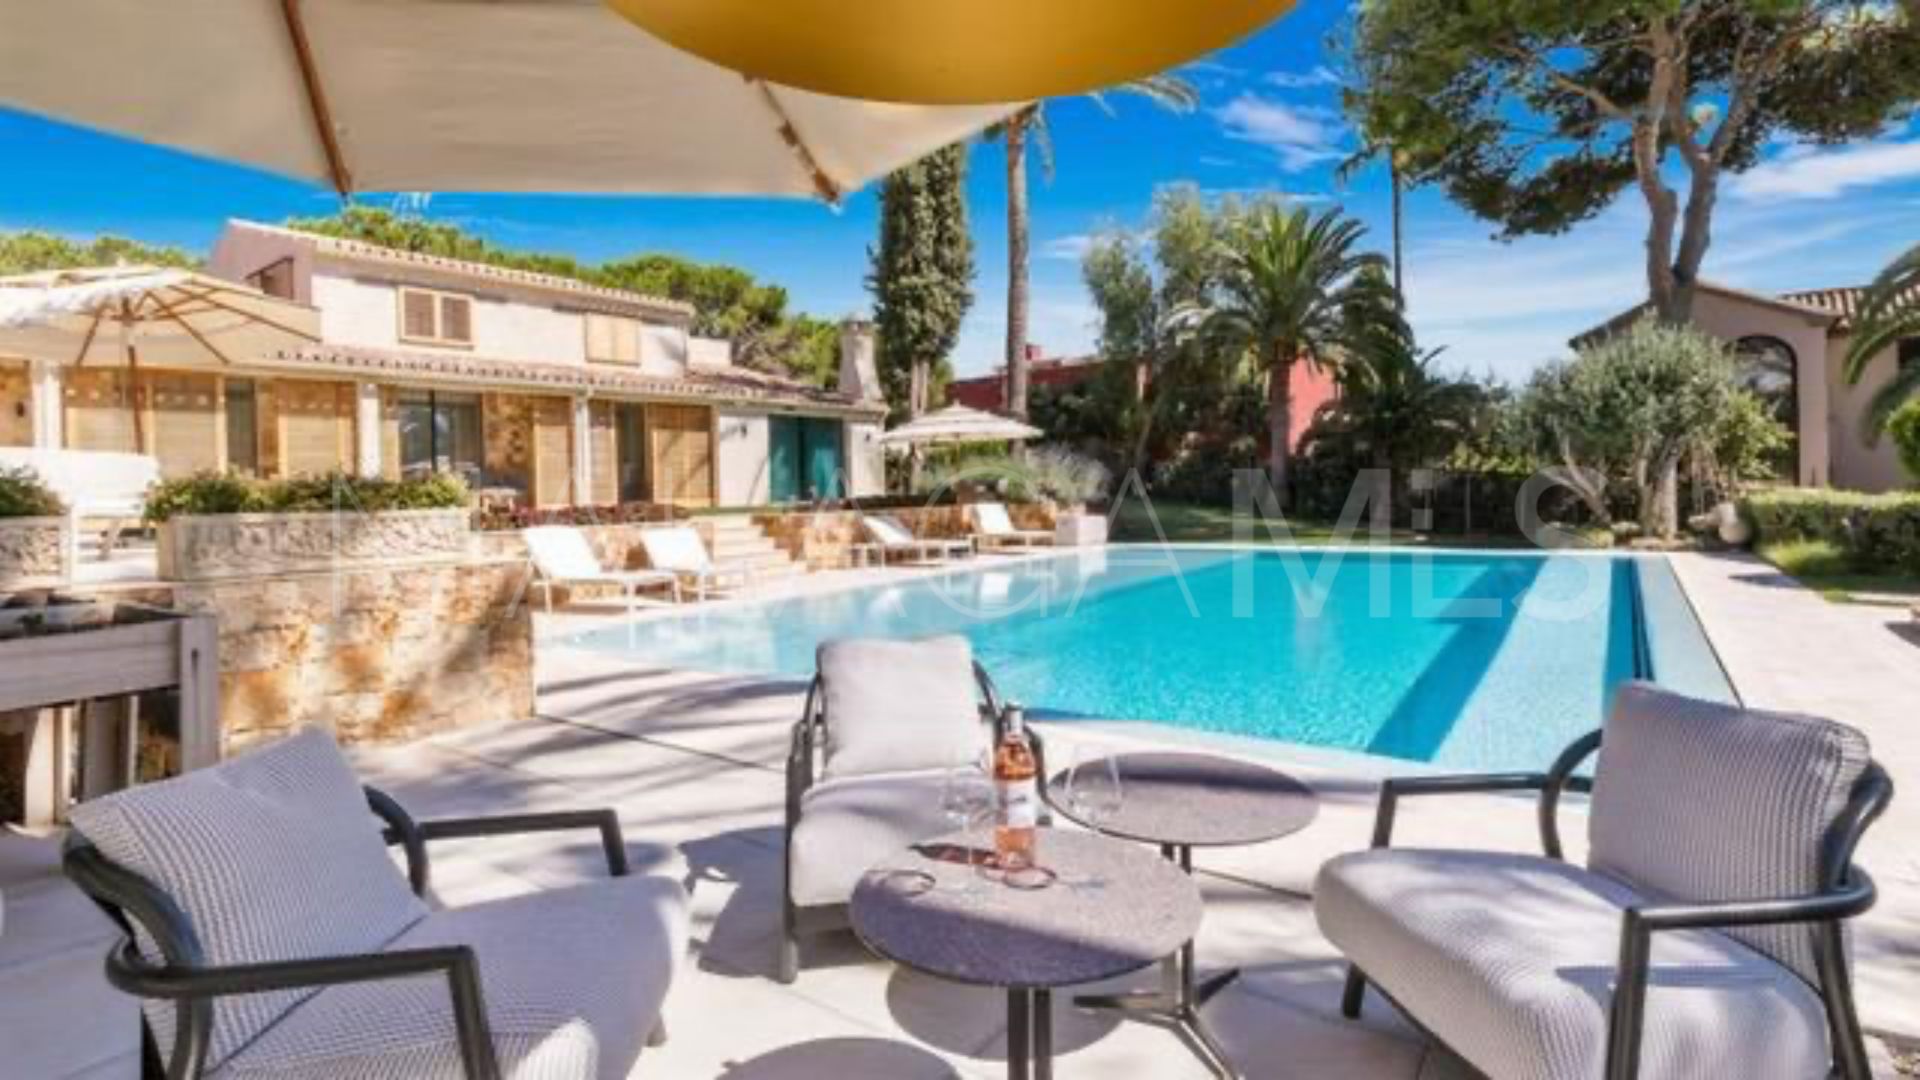 6 bedrooms villa in Marbella for sale